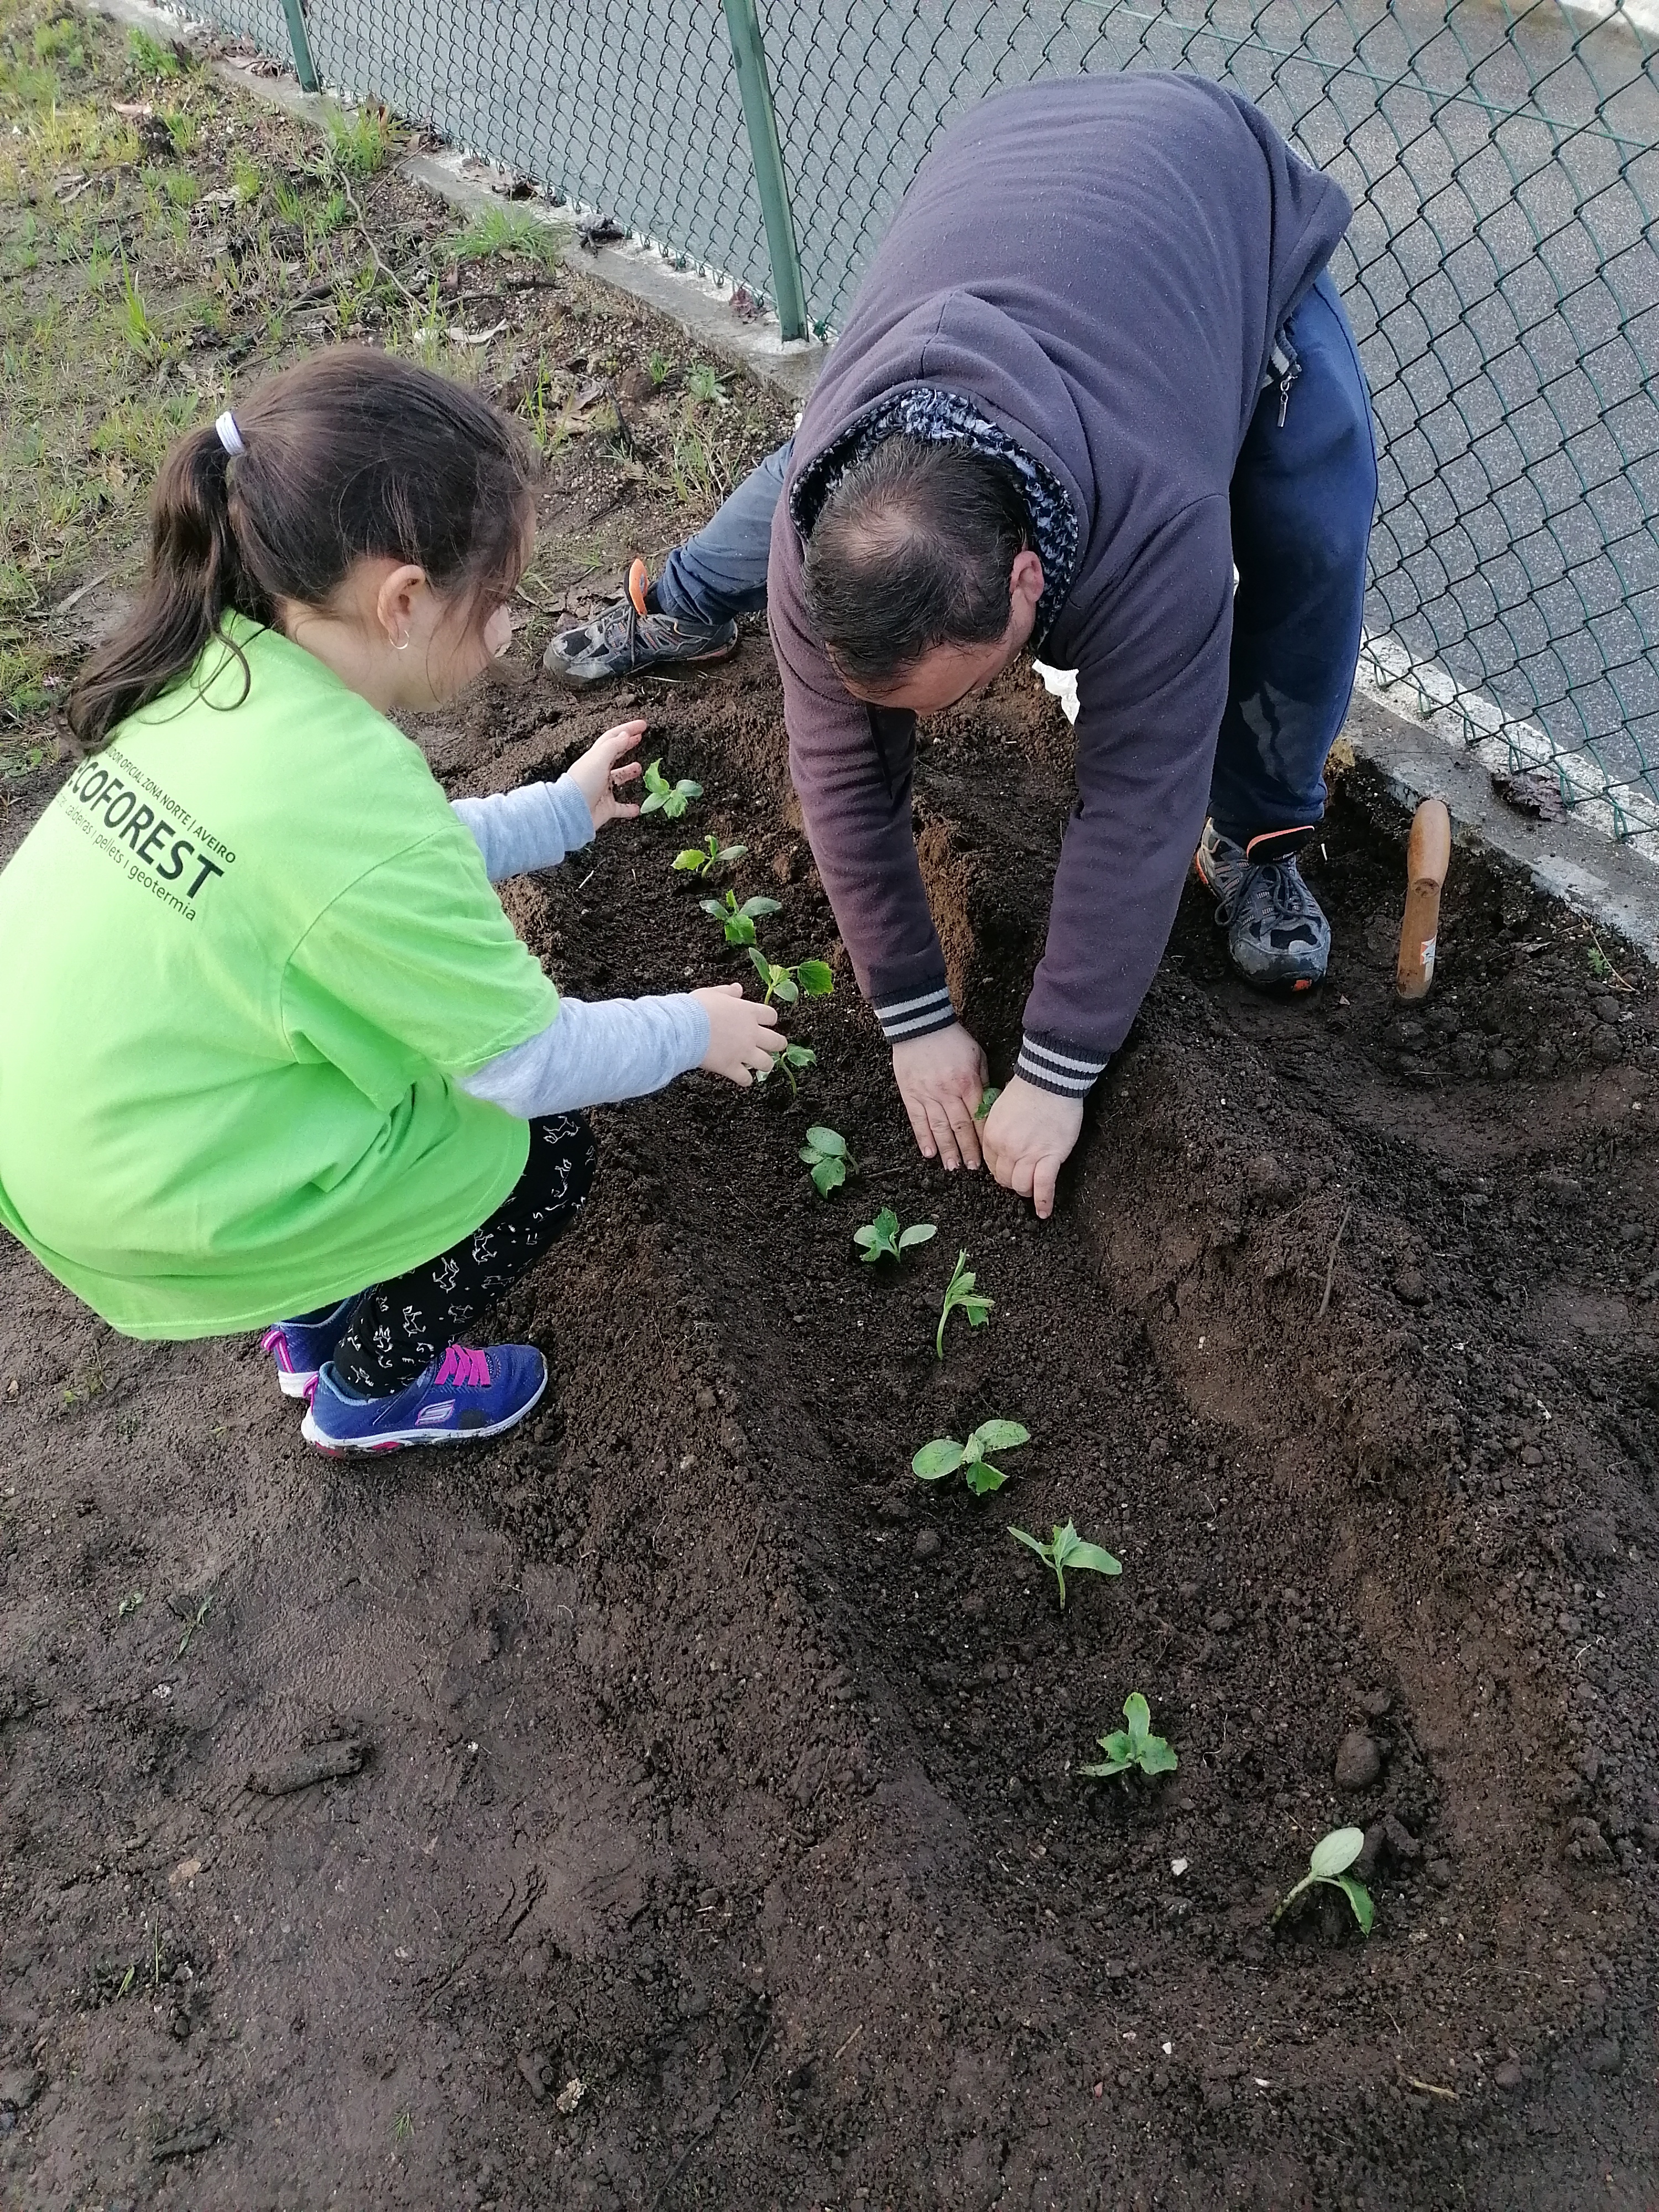 Plantação de pepinos com a colaboração de familiares.
Projeto "Escola sem Muros" - articulação com a comunidade educativa.